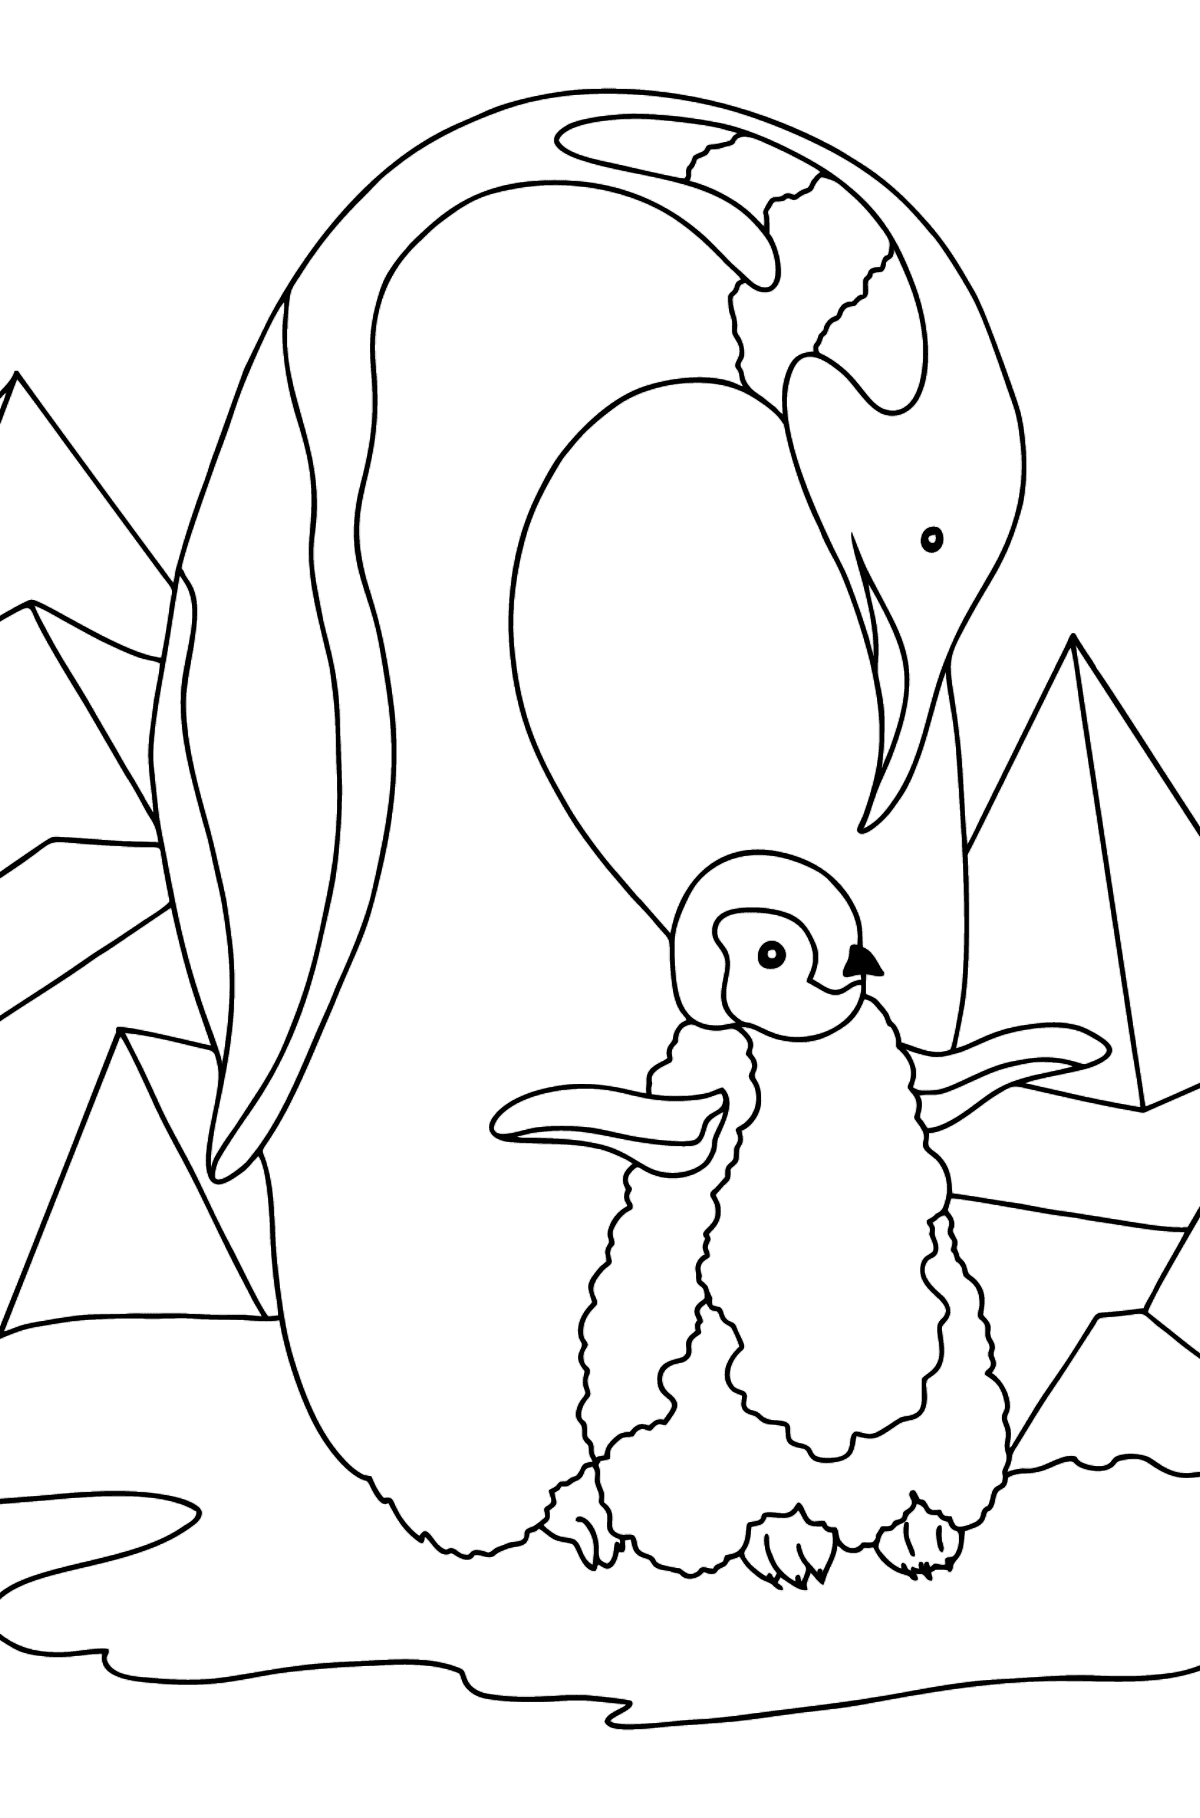 Boyama sayfası penguen (sert) - Boyamalar çocuklar için